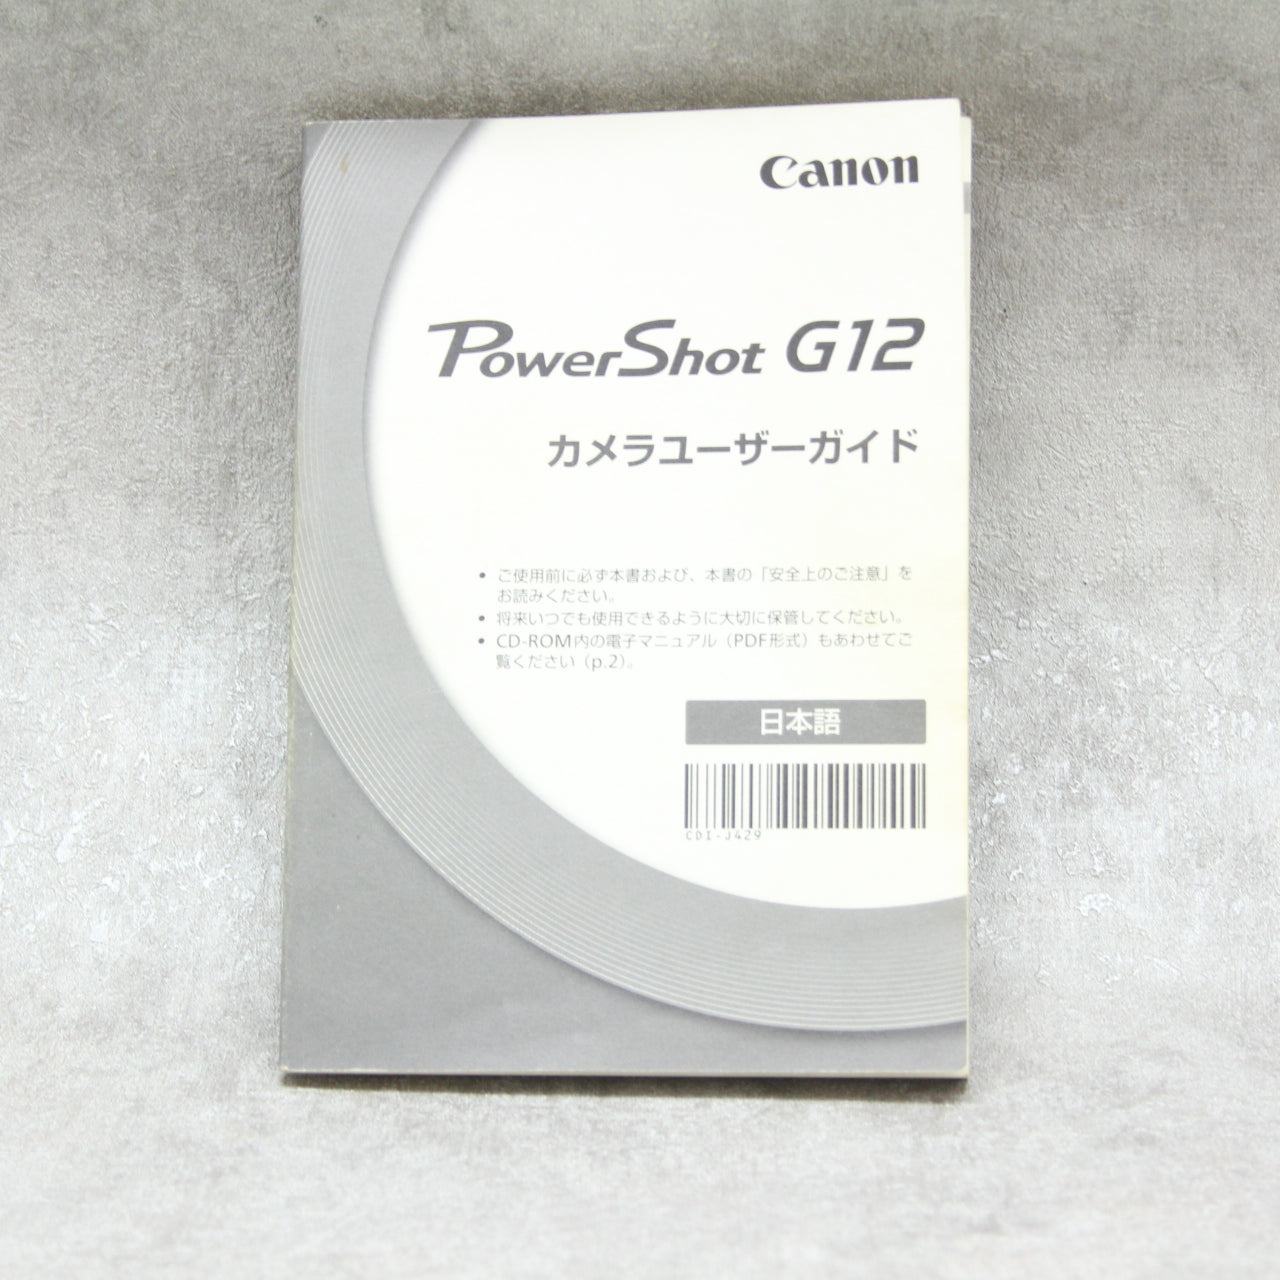 中古品 Canon PowerShot G12 【11月29日(火)のYouTube生配信でご紹介】